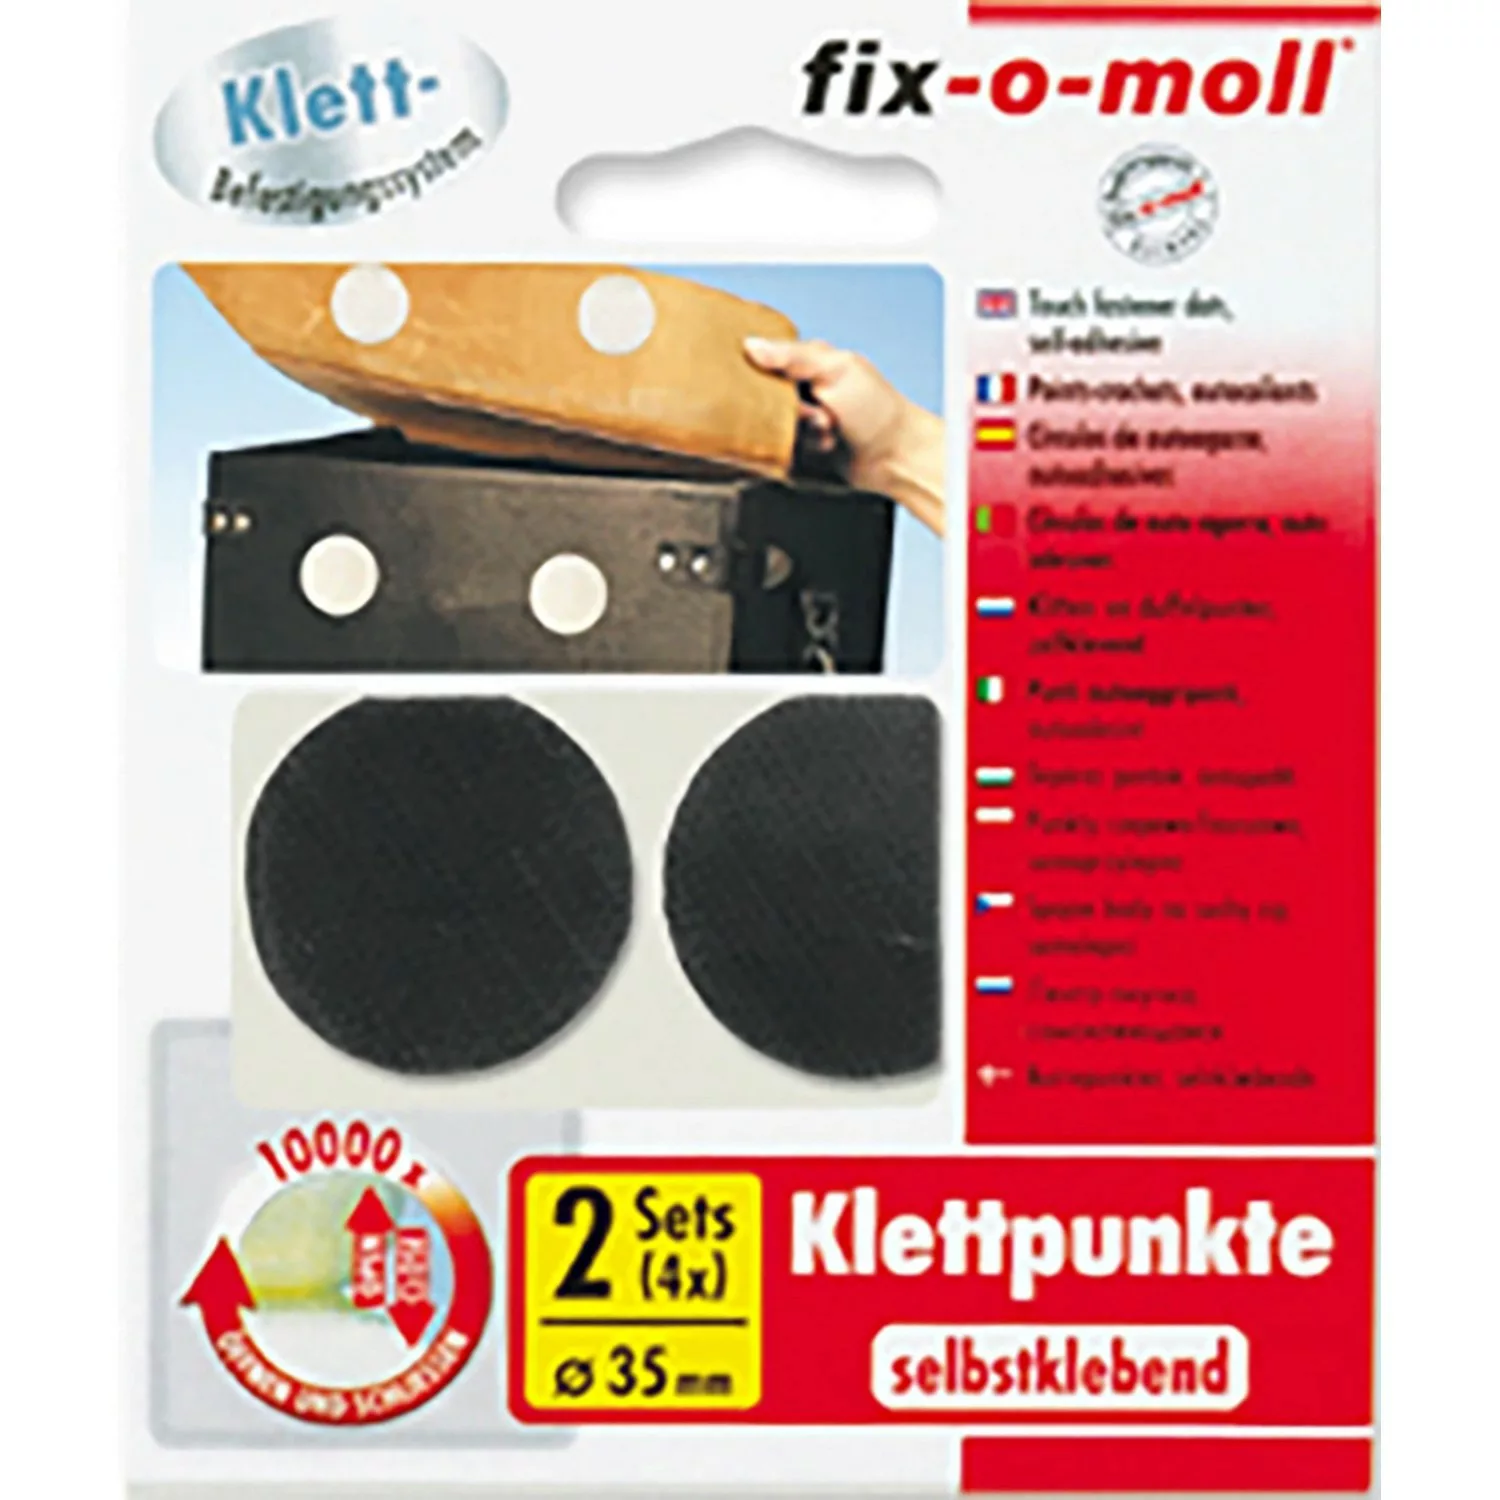 Fix-o-moll  Klettpunkte selbstklebend 4 Sets Schwarz 35 mm günstig online kaufen